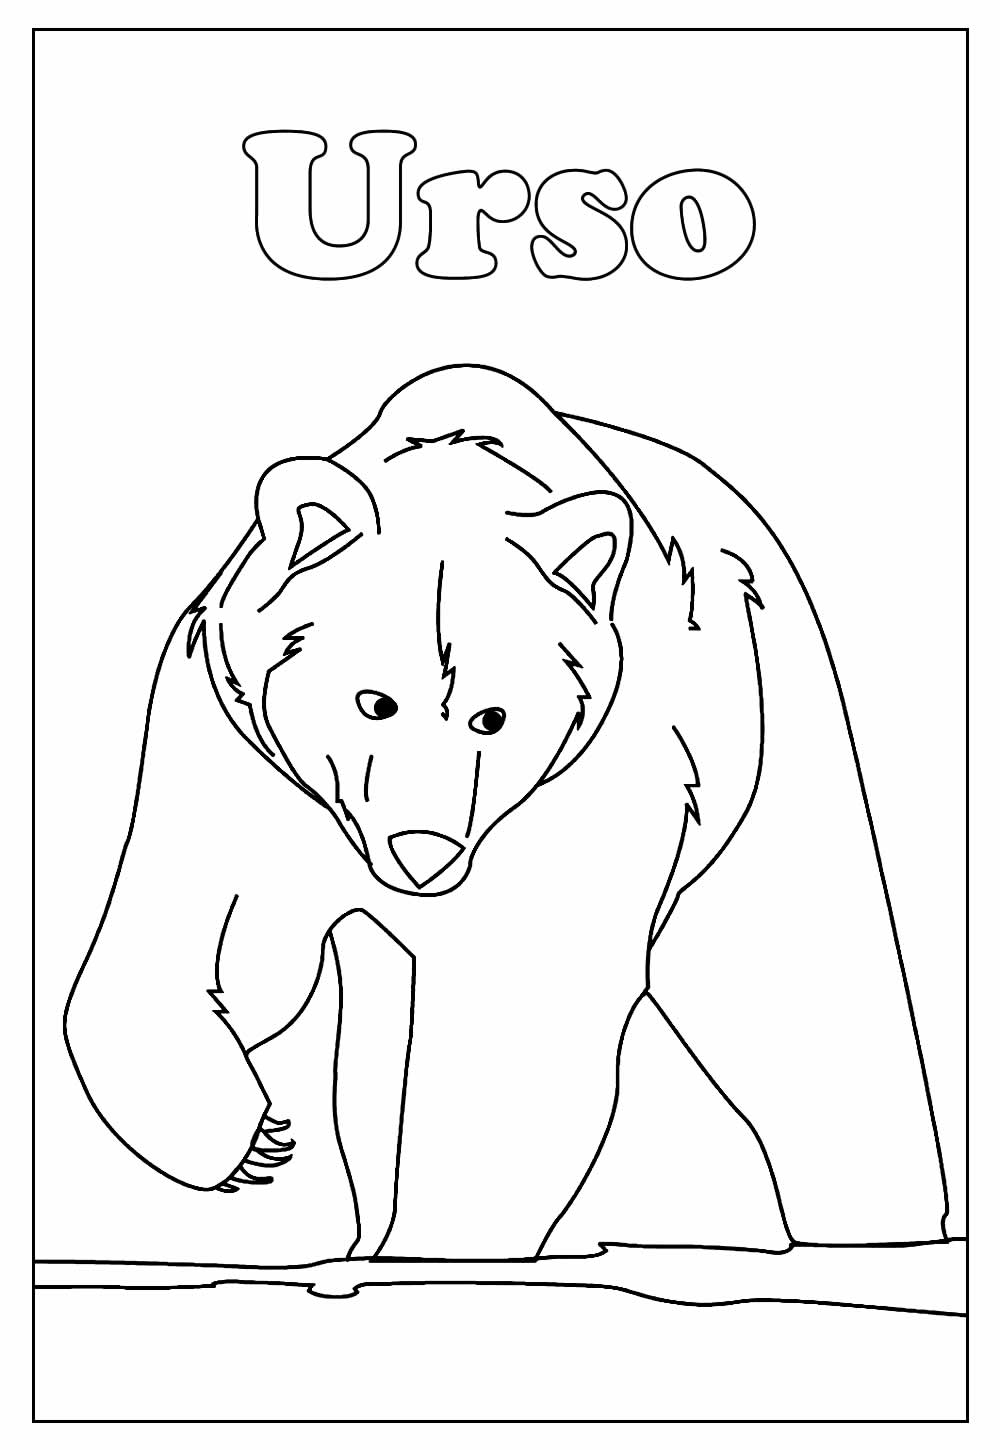 Desenho Educativo de Urso para colorir